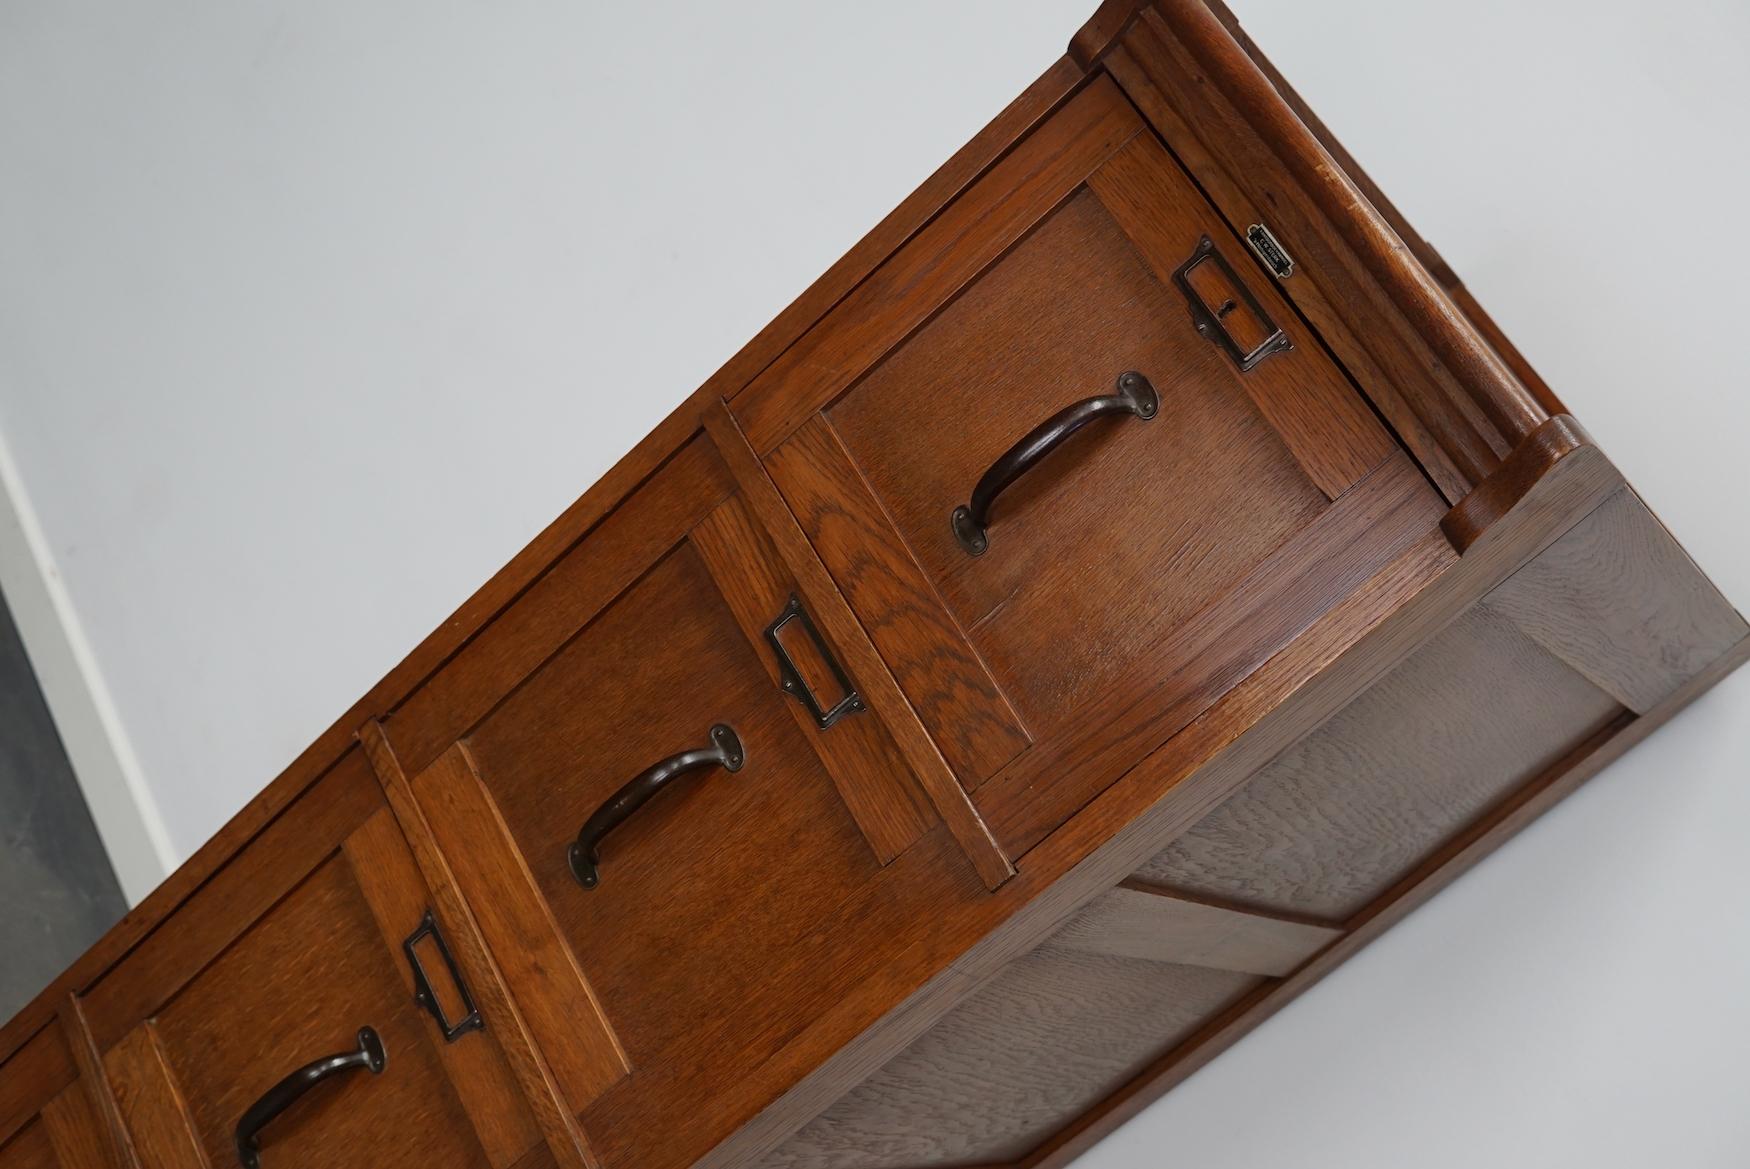 Ce classeur en chêne a été conçu et fabriqué vers 1930 aux Pays-Bas par C.I.C. Sterk mobilier de bureau à 'S-Hertogenbosch. Il comporte 4 tiroirs avec des ferrures en métal noir. L'intérieur des tiroirs mesure : DWH 46 x 32 x 6 / 27,5 cm ils peuvent